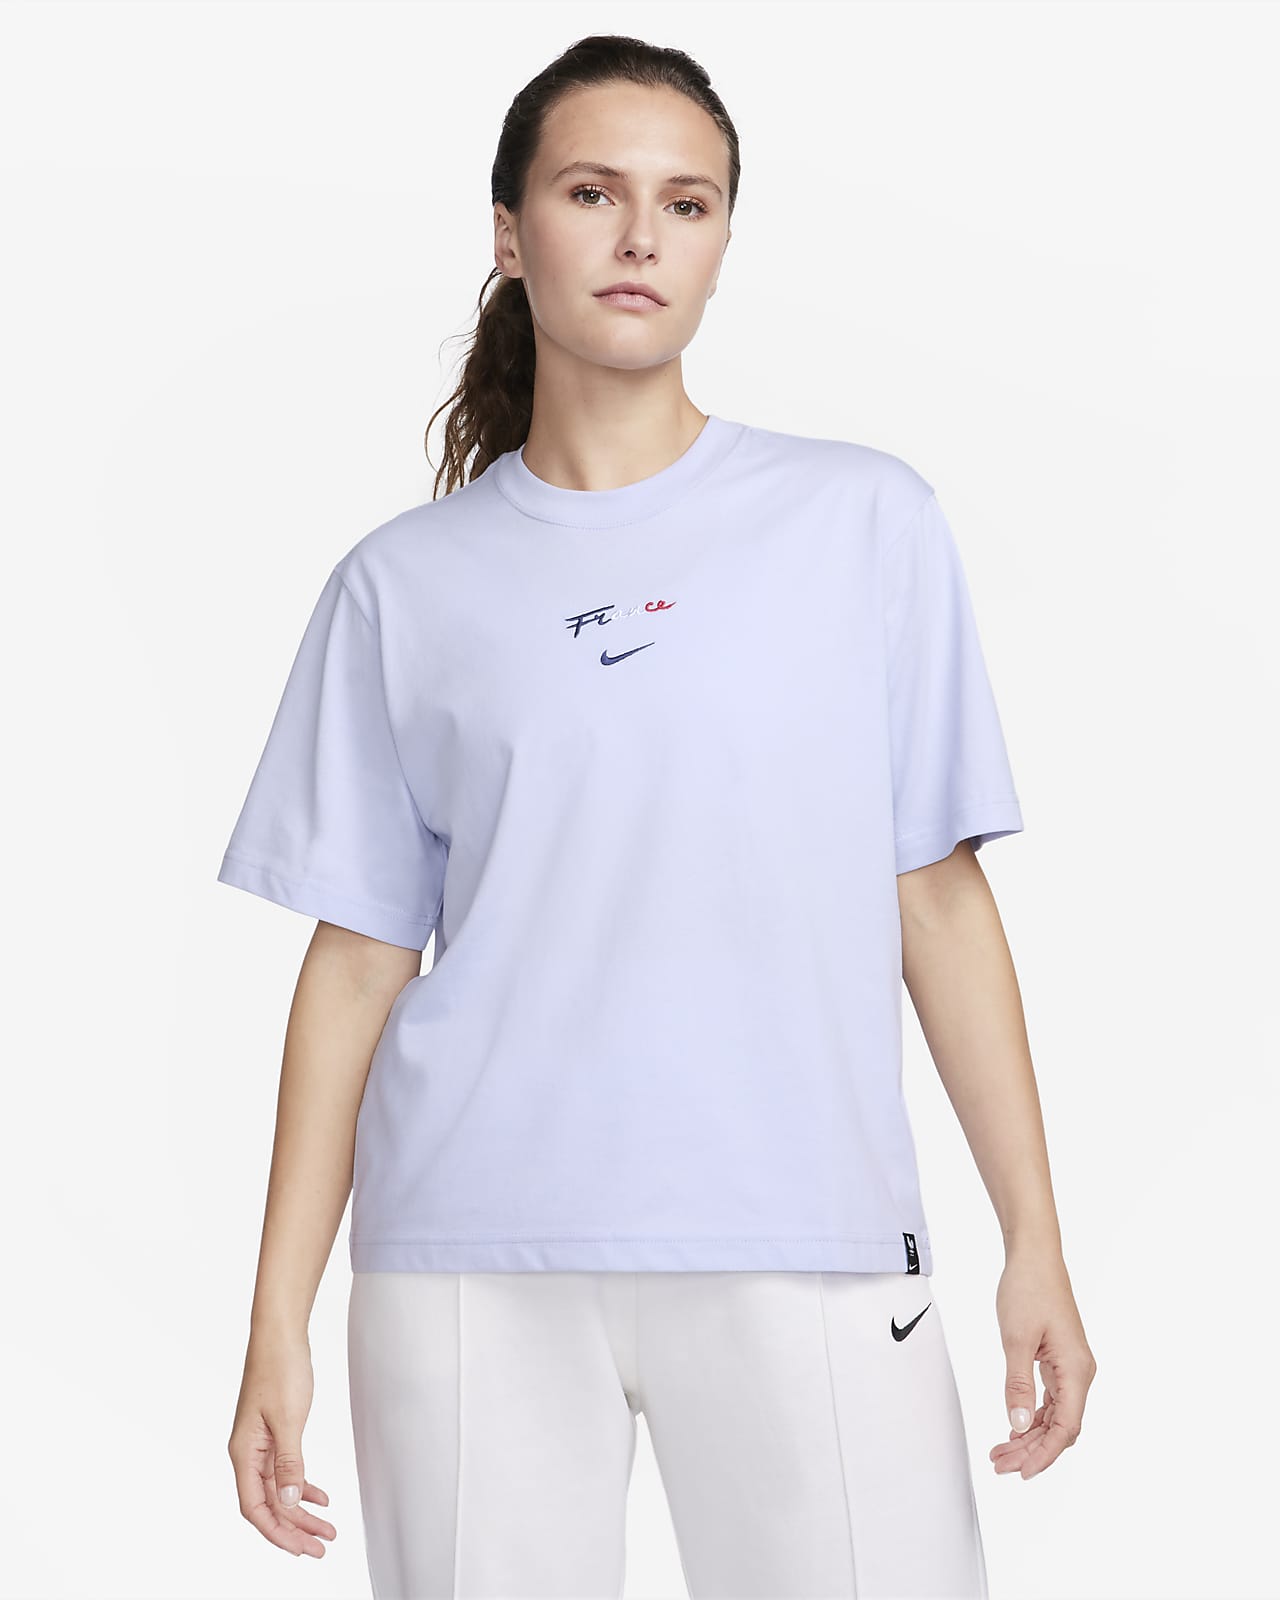 FFF Women's T-Shirt